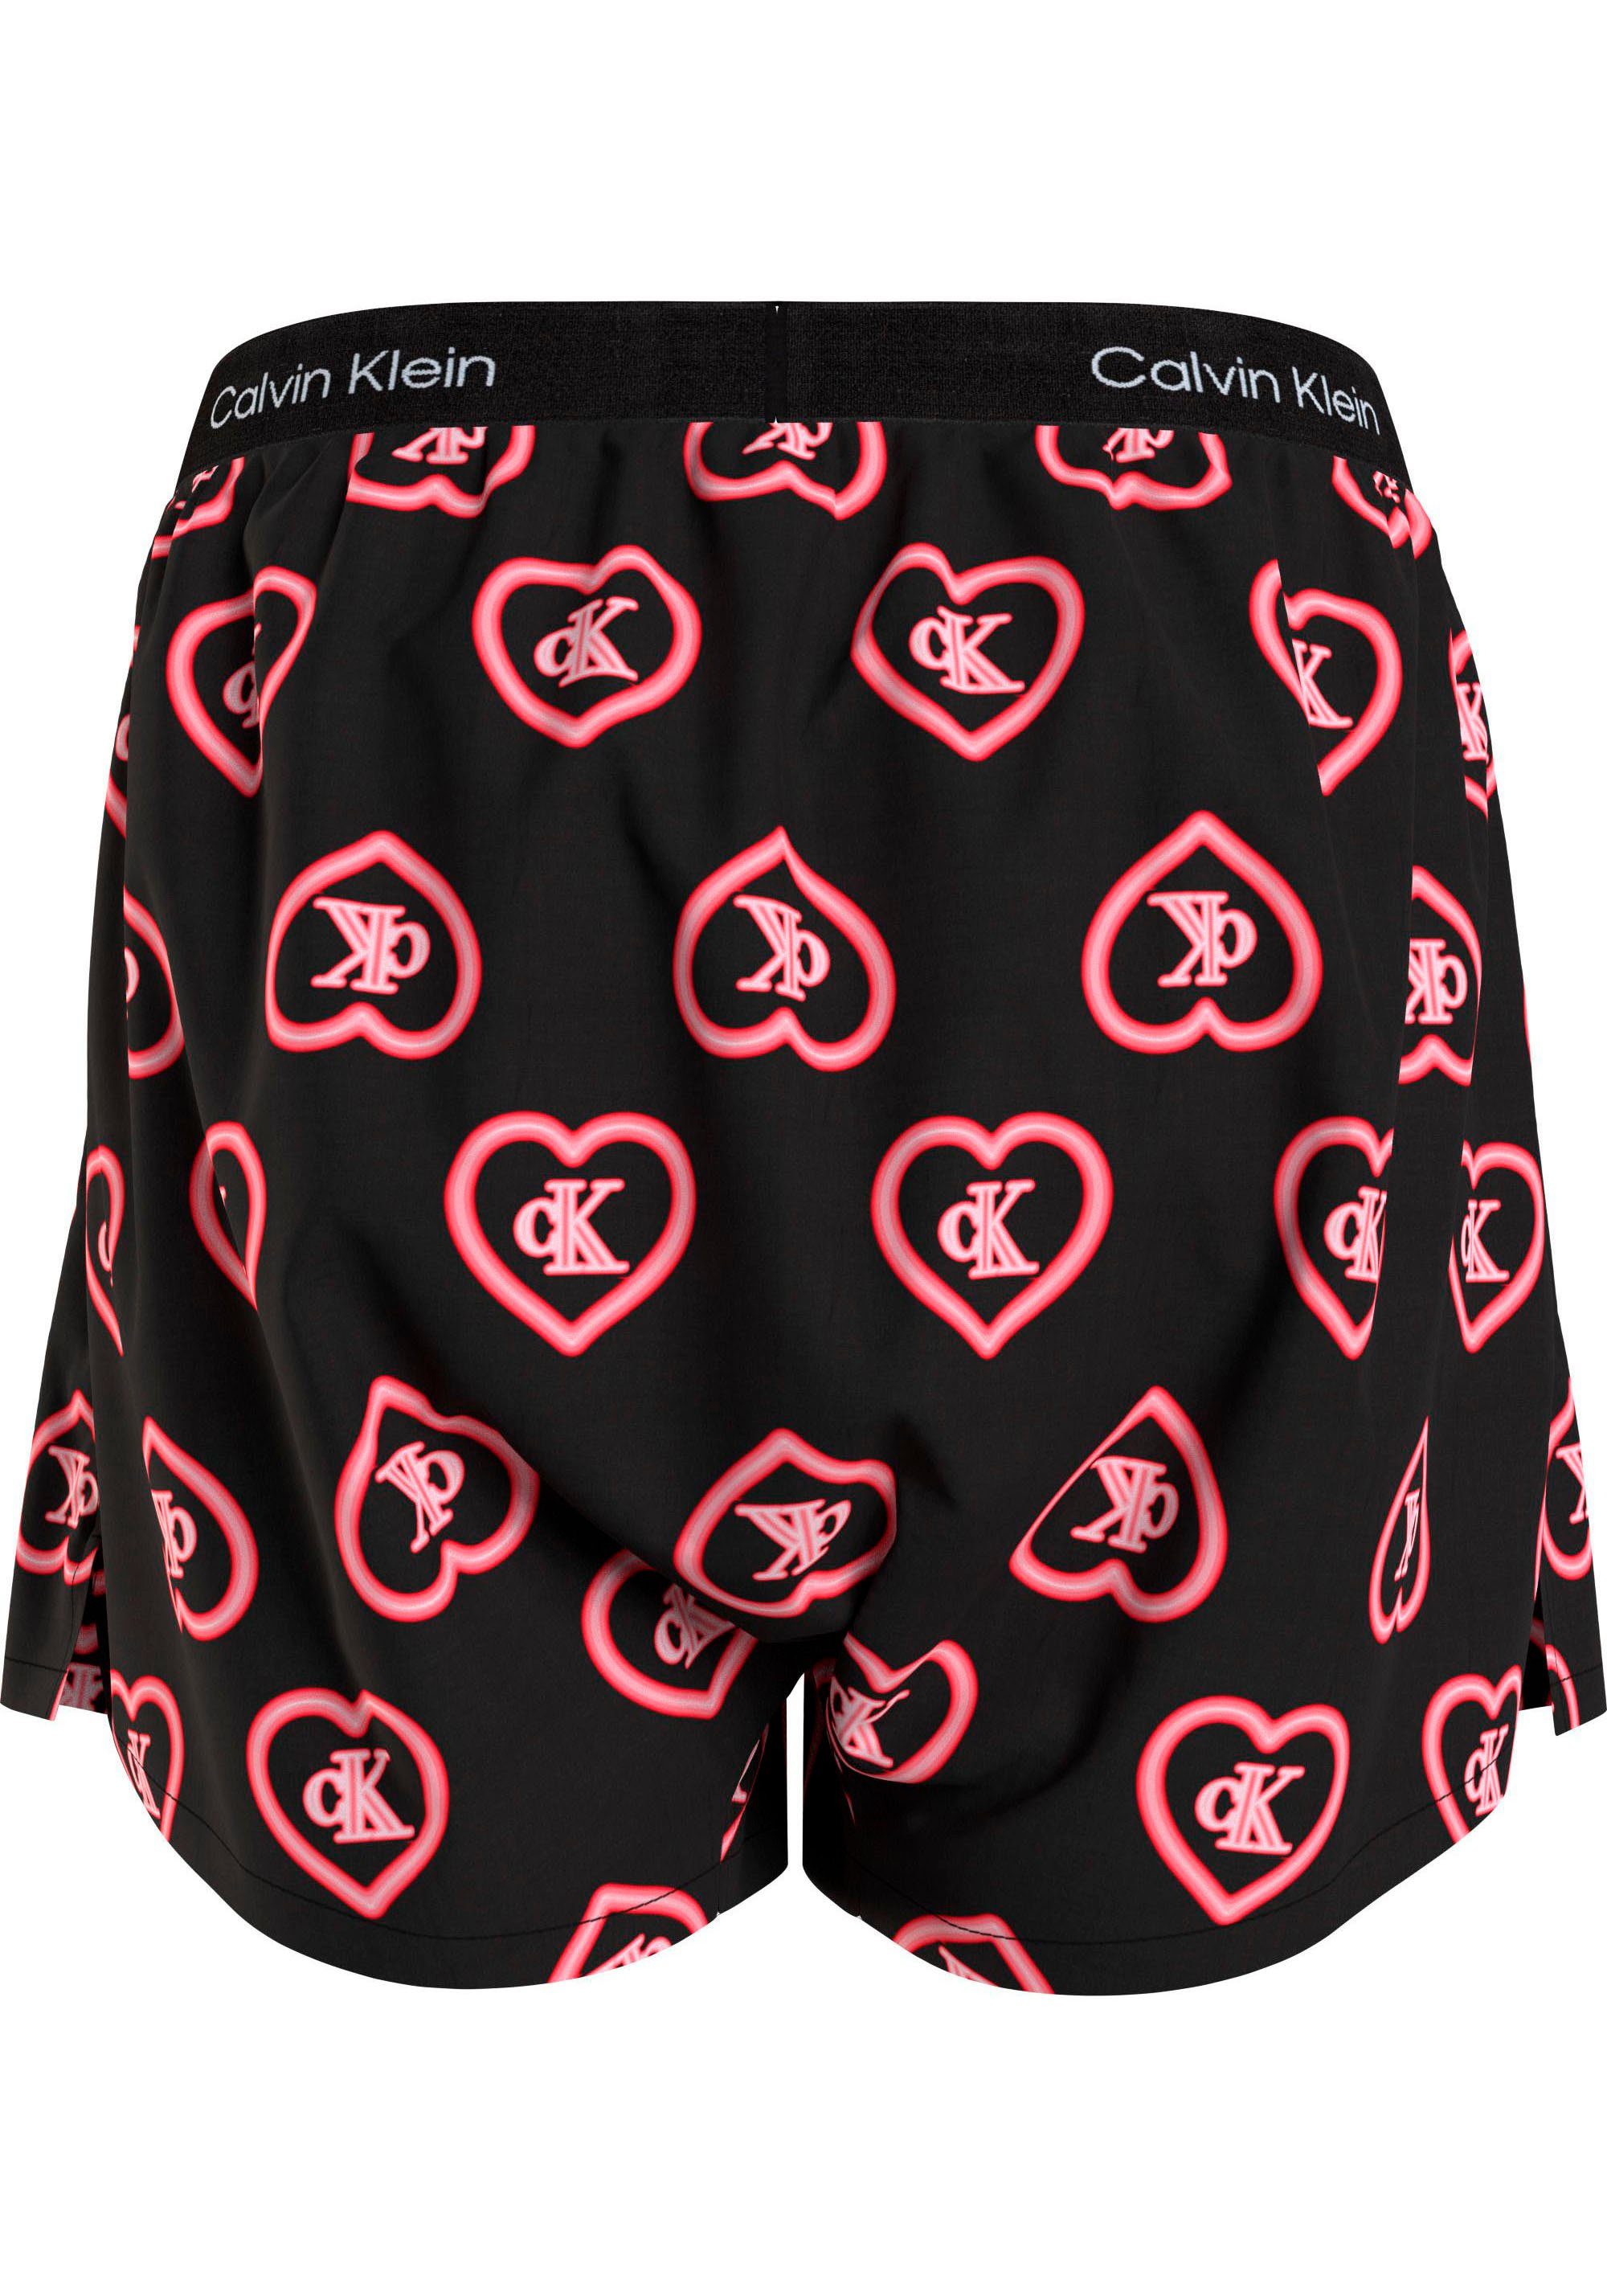 Underwear Calvin mit BOXER Print Pyjamashorts Klein TRADITIONAL